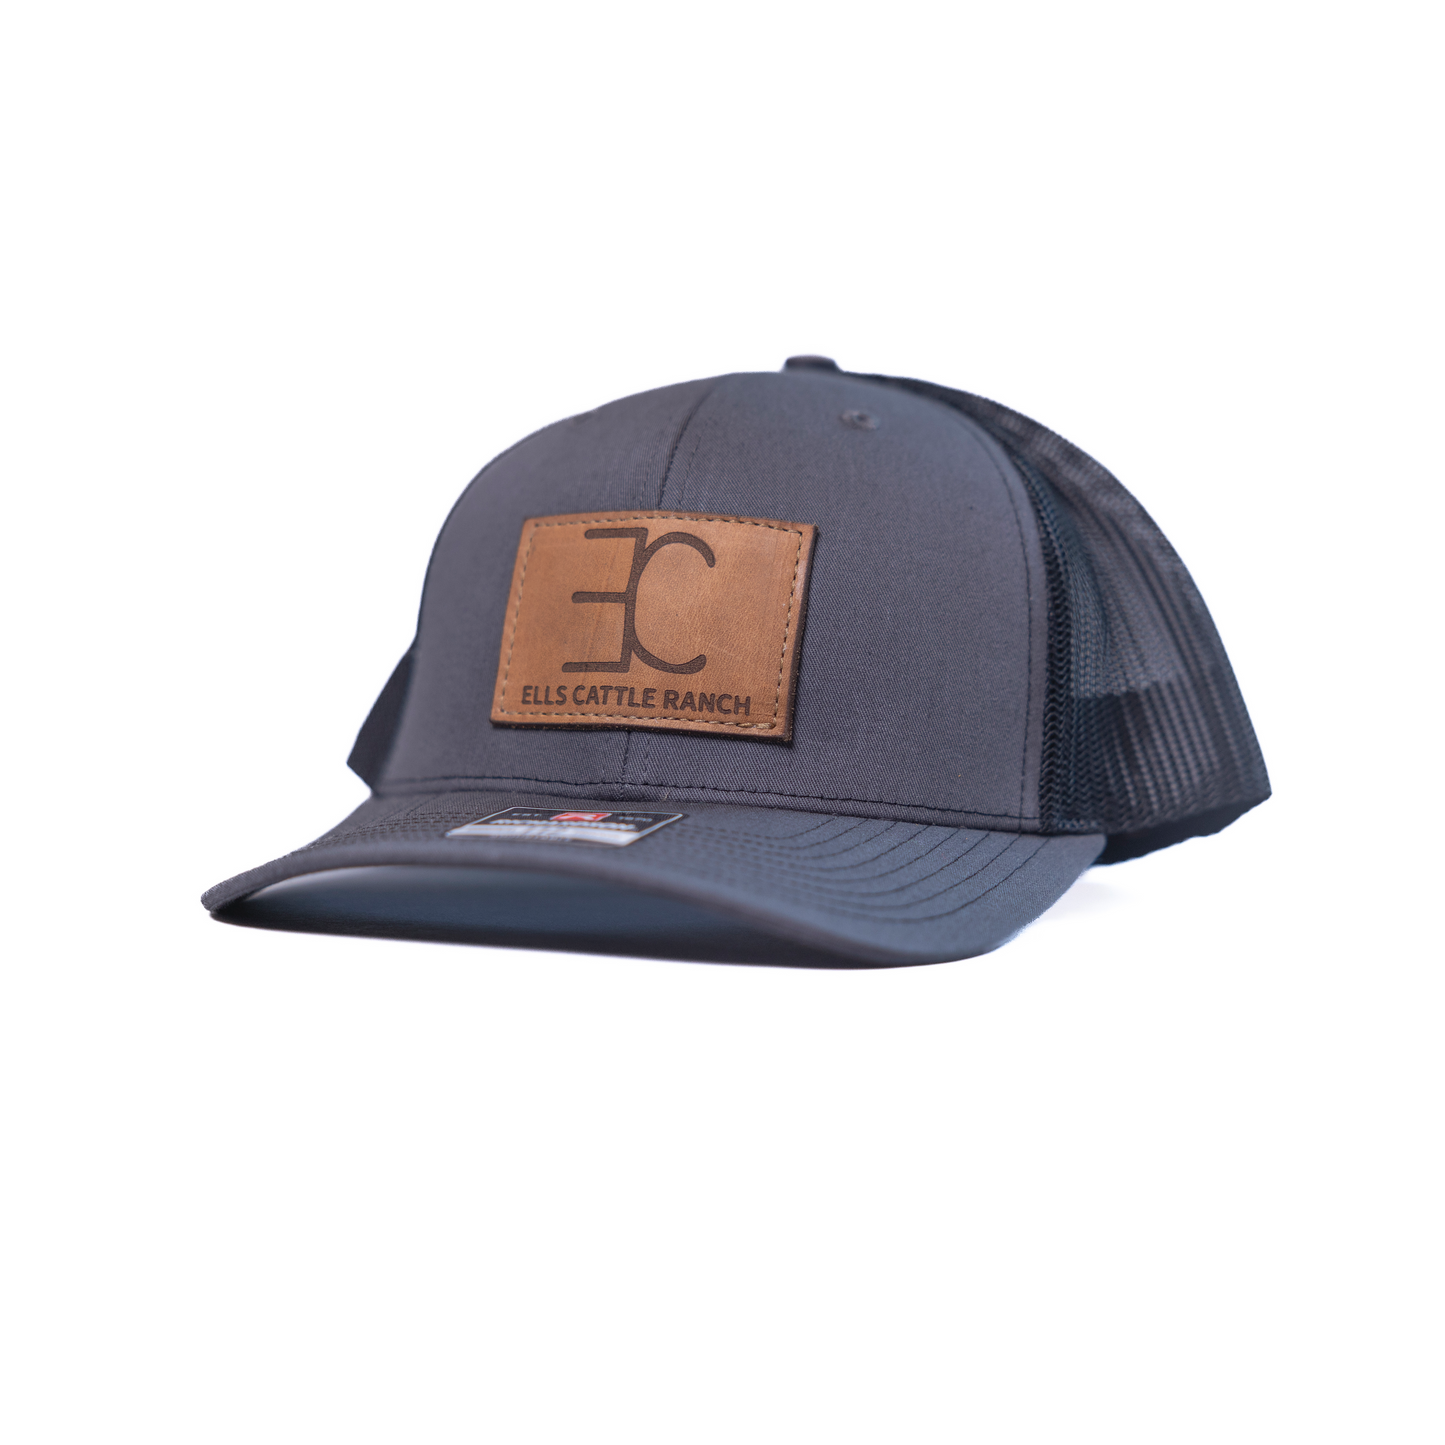 Ells Cattle Ranch Trucker Hats - Leather Logo